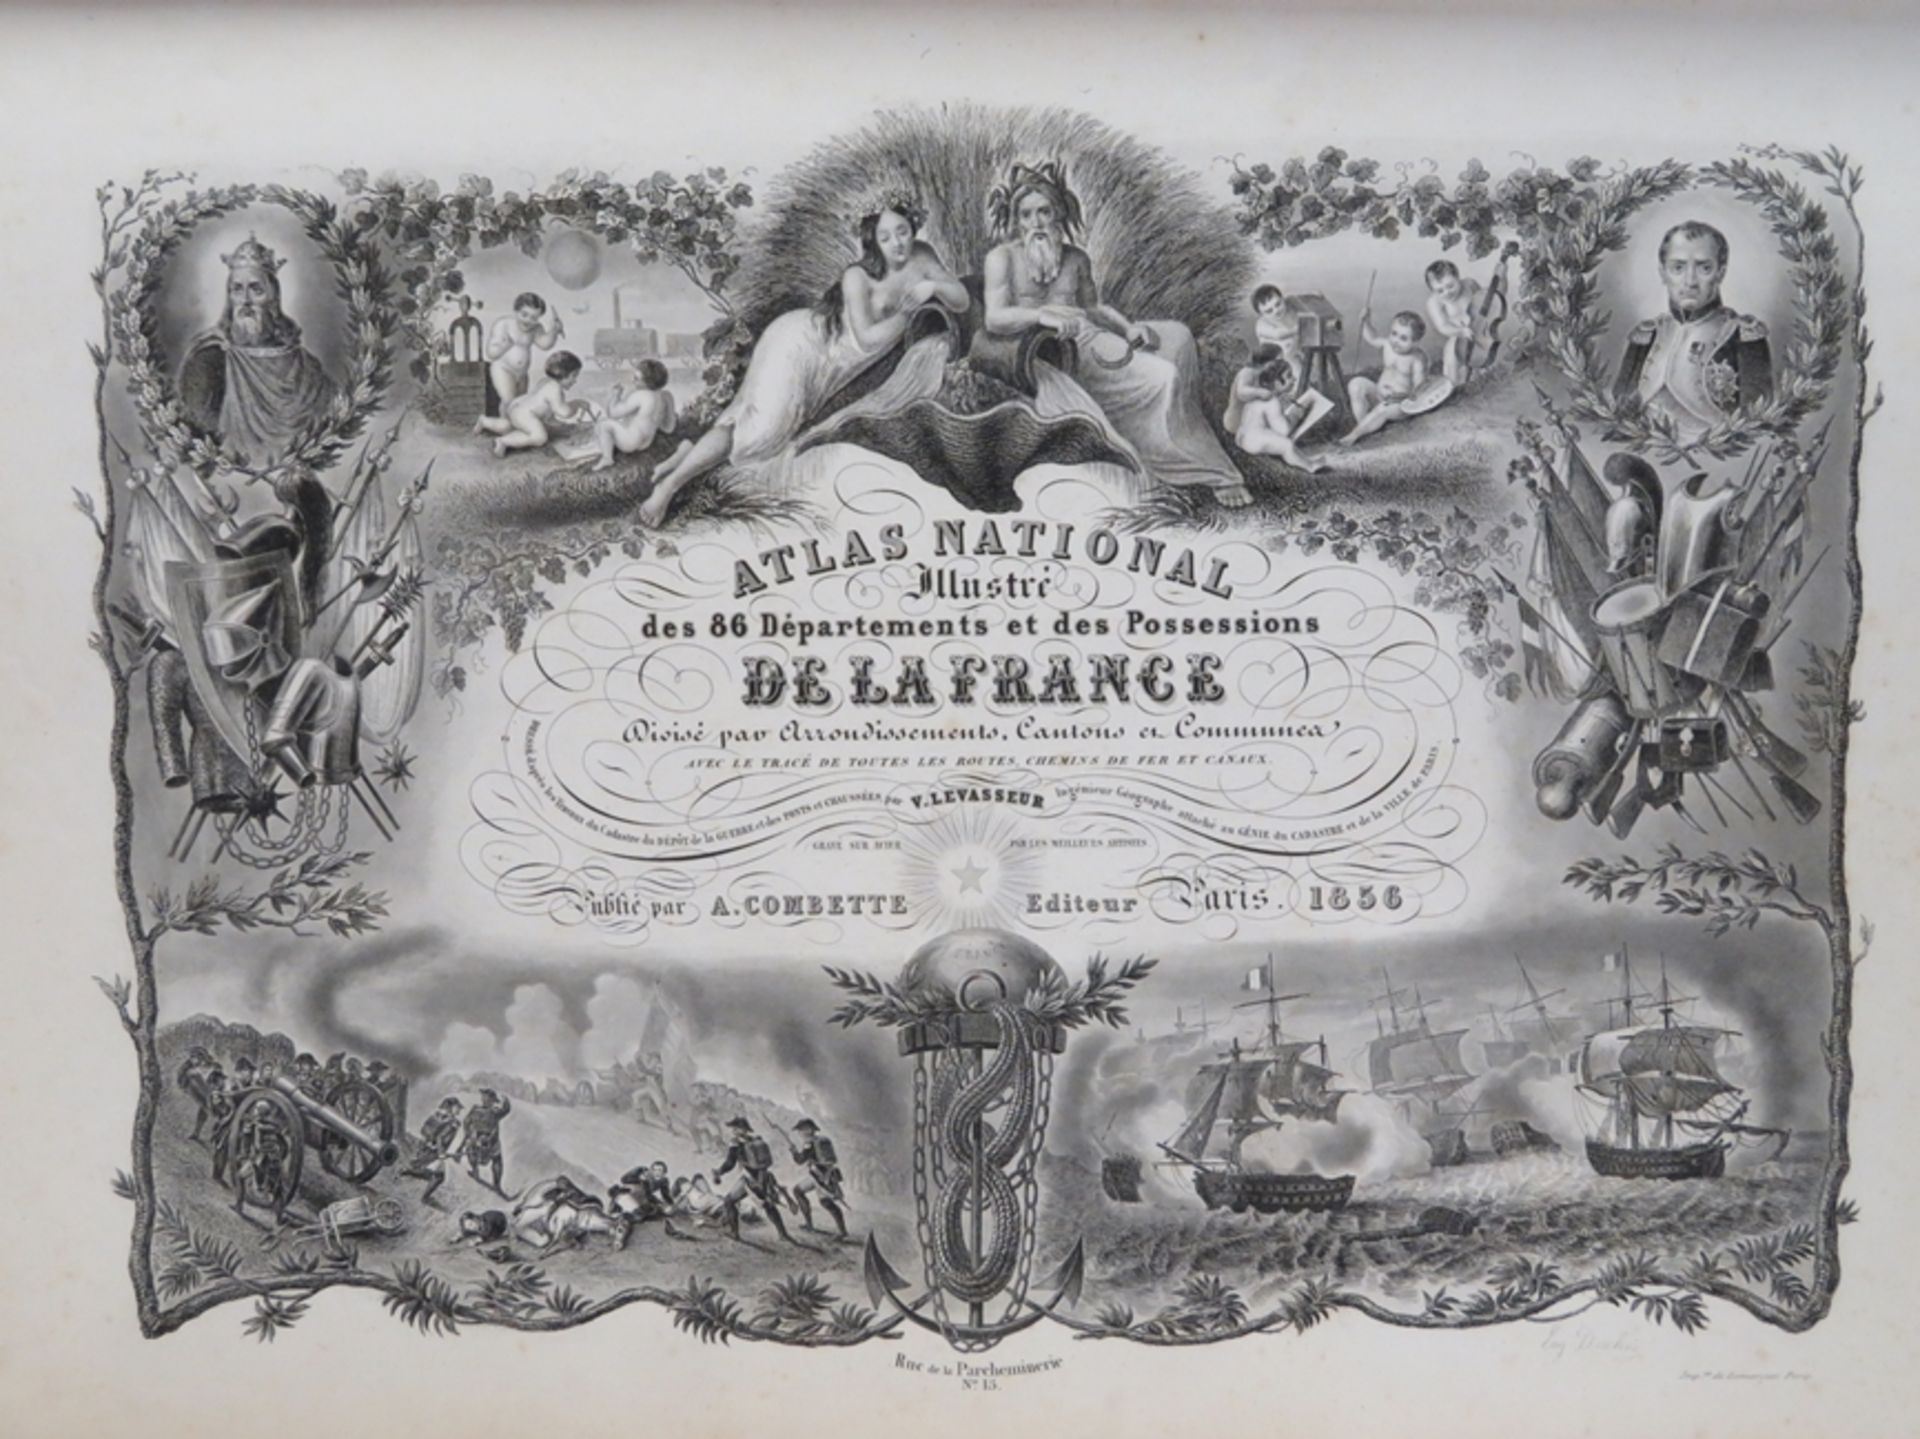 Bd., Atlas National Illustre des 86 Departements et des Possessions de la Franc - Image 2 of 2